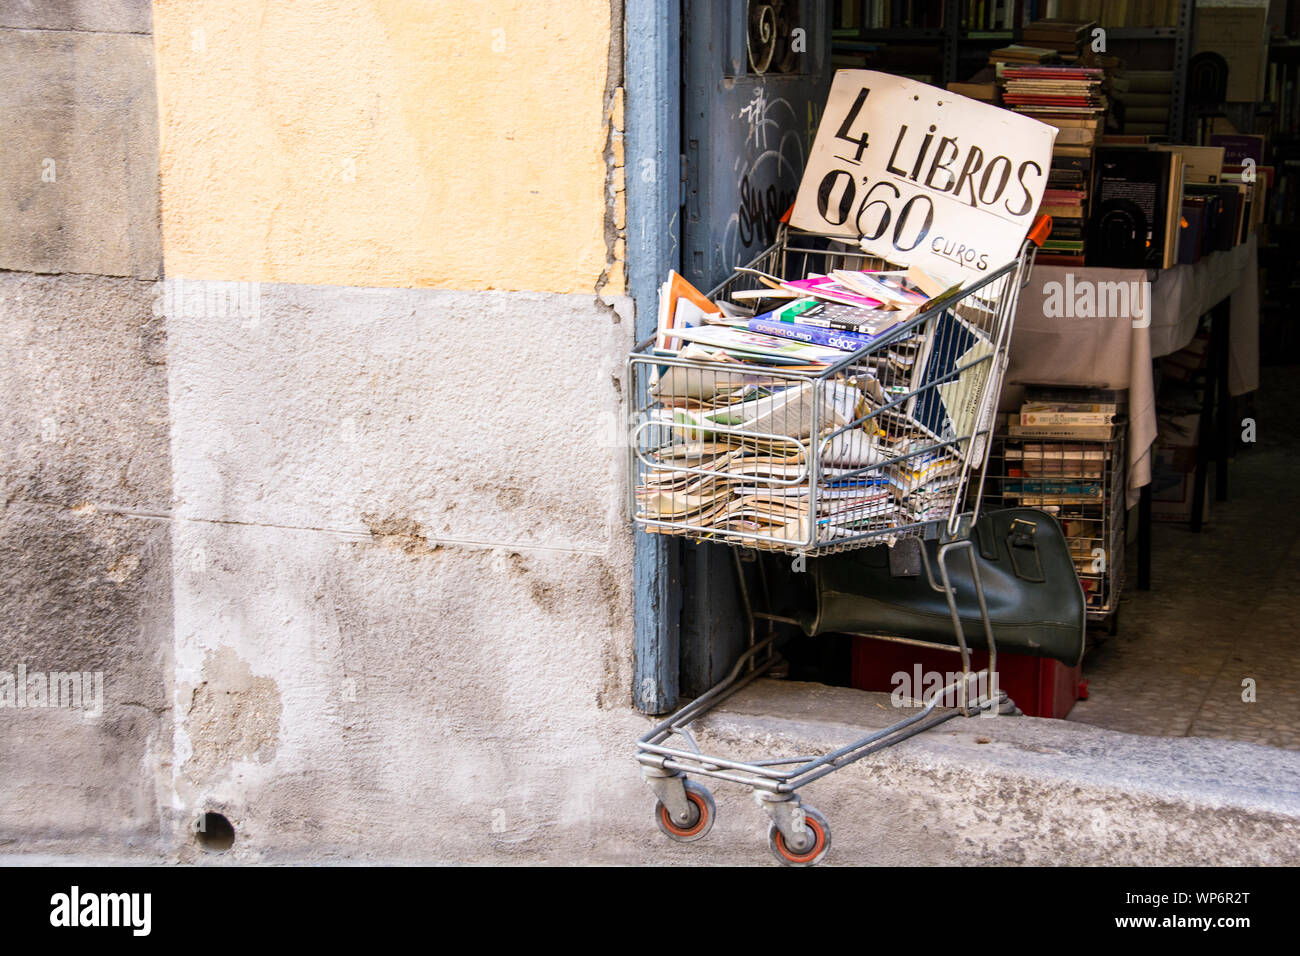 Un panier à l'entrée d'un magasin de livres à Tolède, en Espagne, rempli à la brime de livres et autres périodiques. Banque D'Images